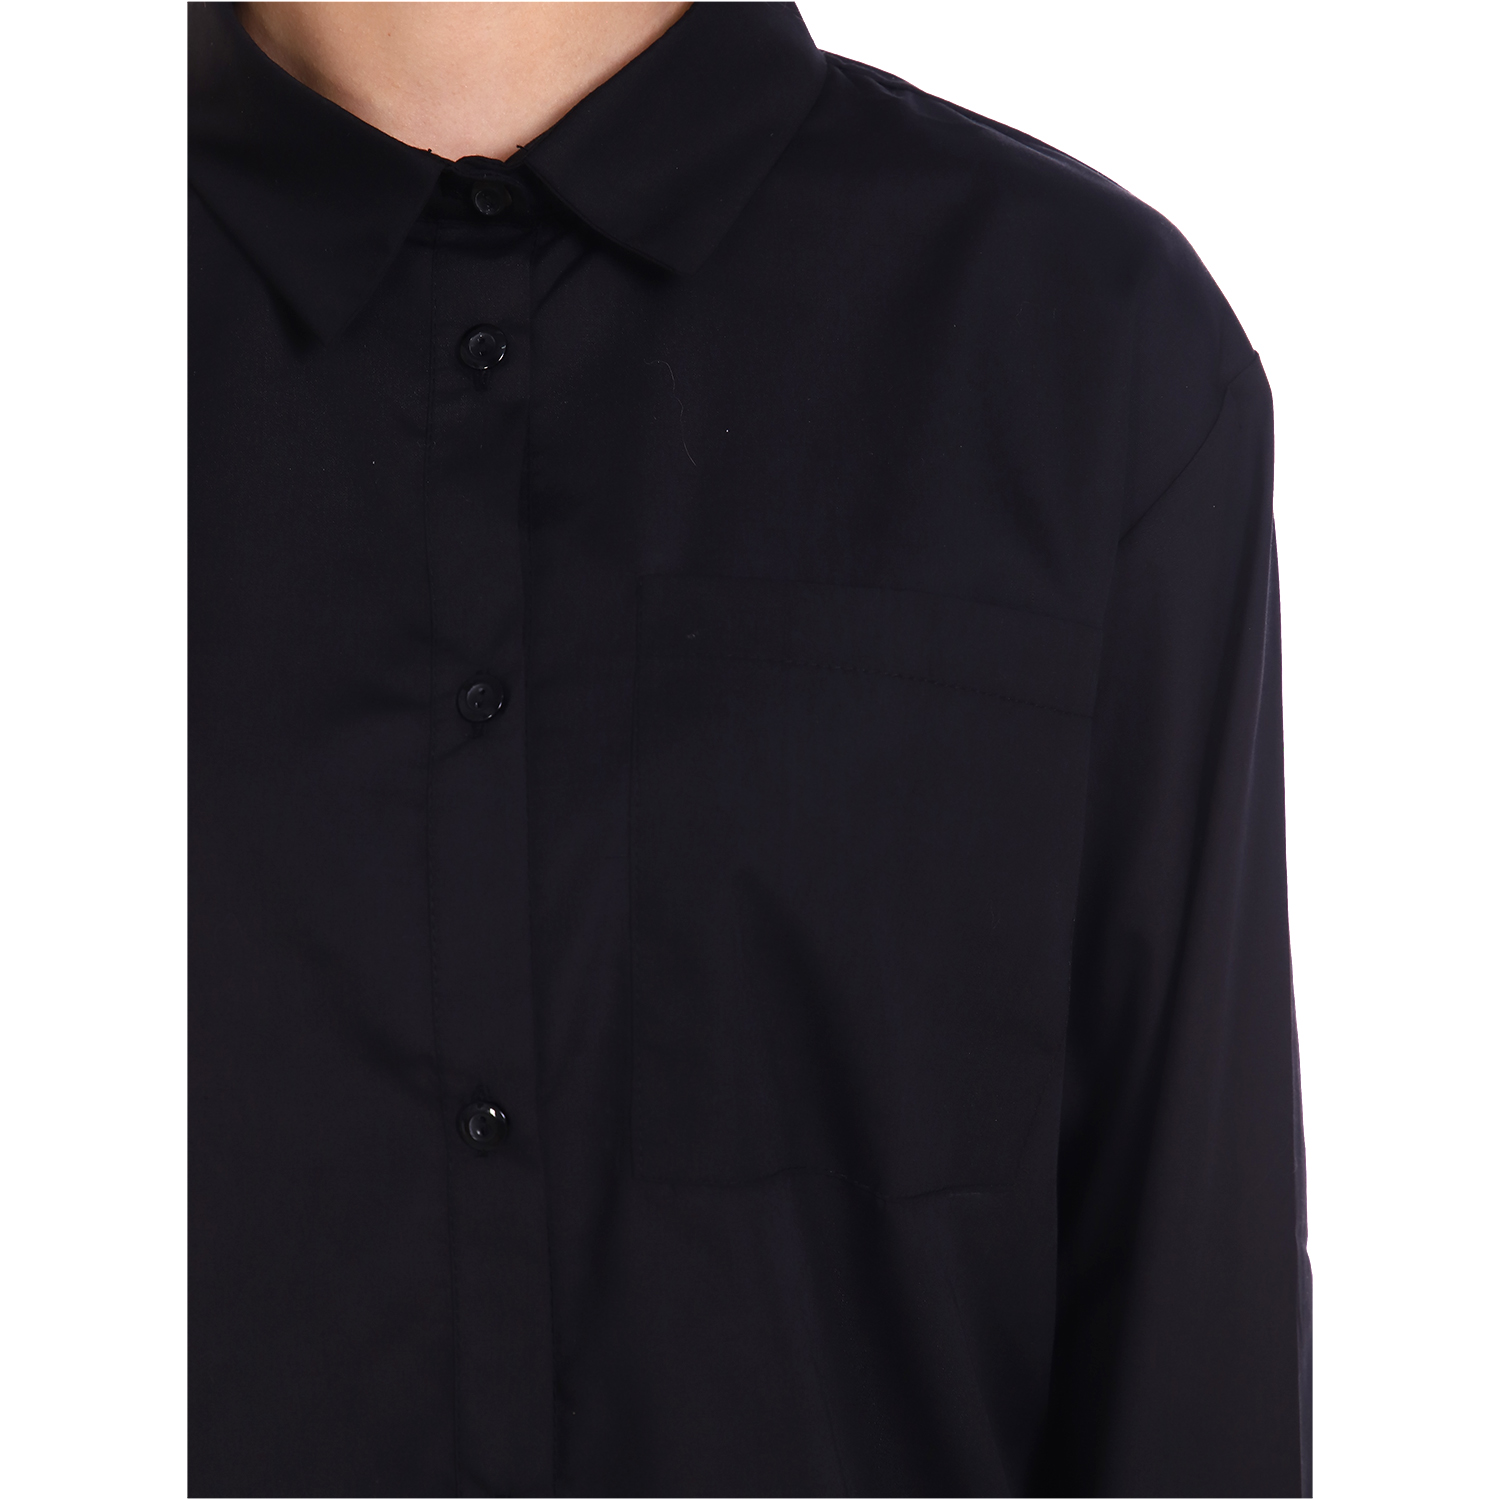 Рубашка Детская Одежда 401ФЛ9/черный - фото 6